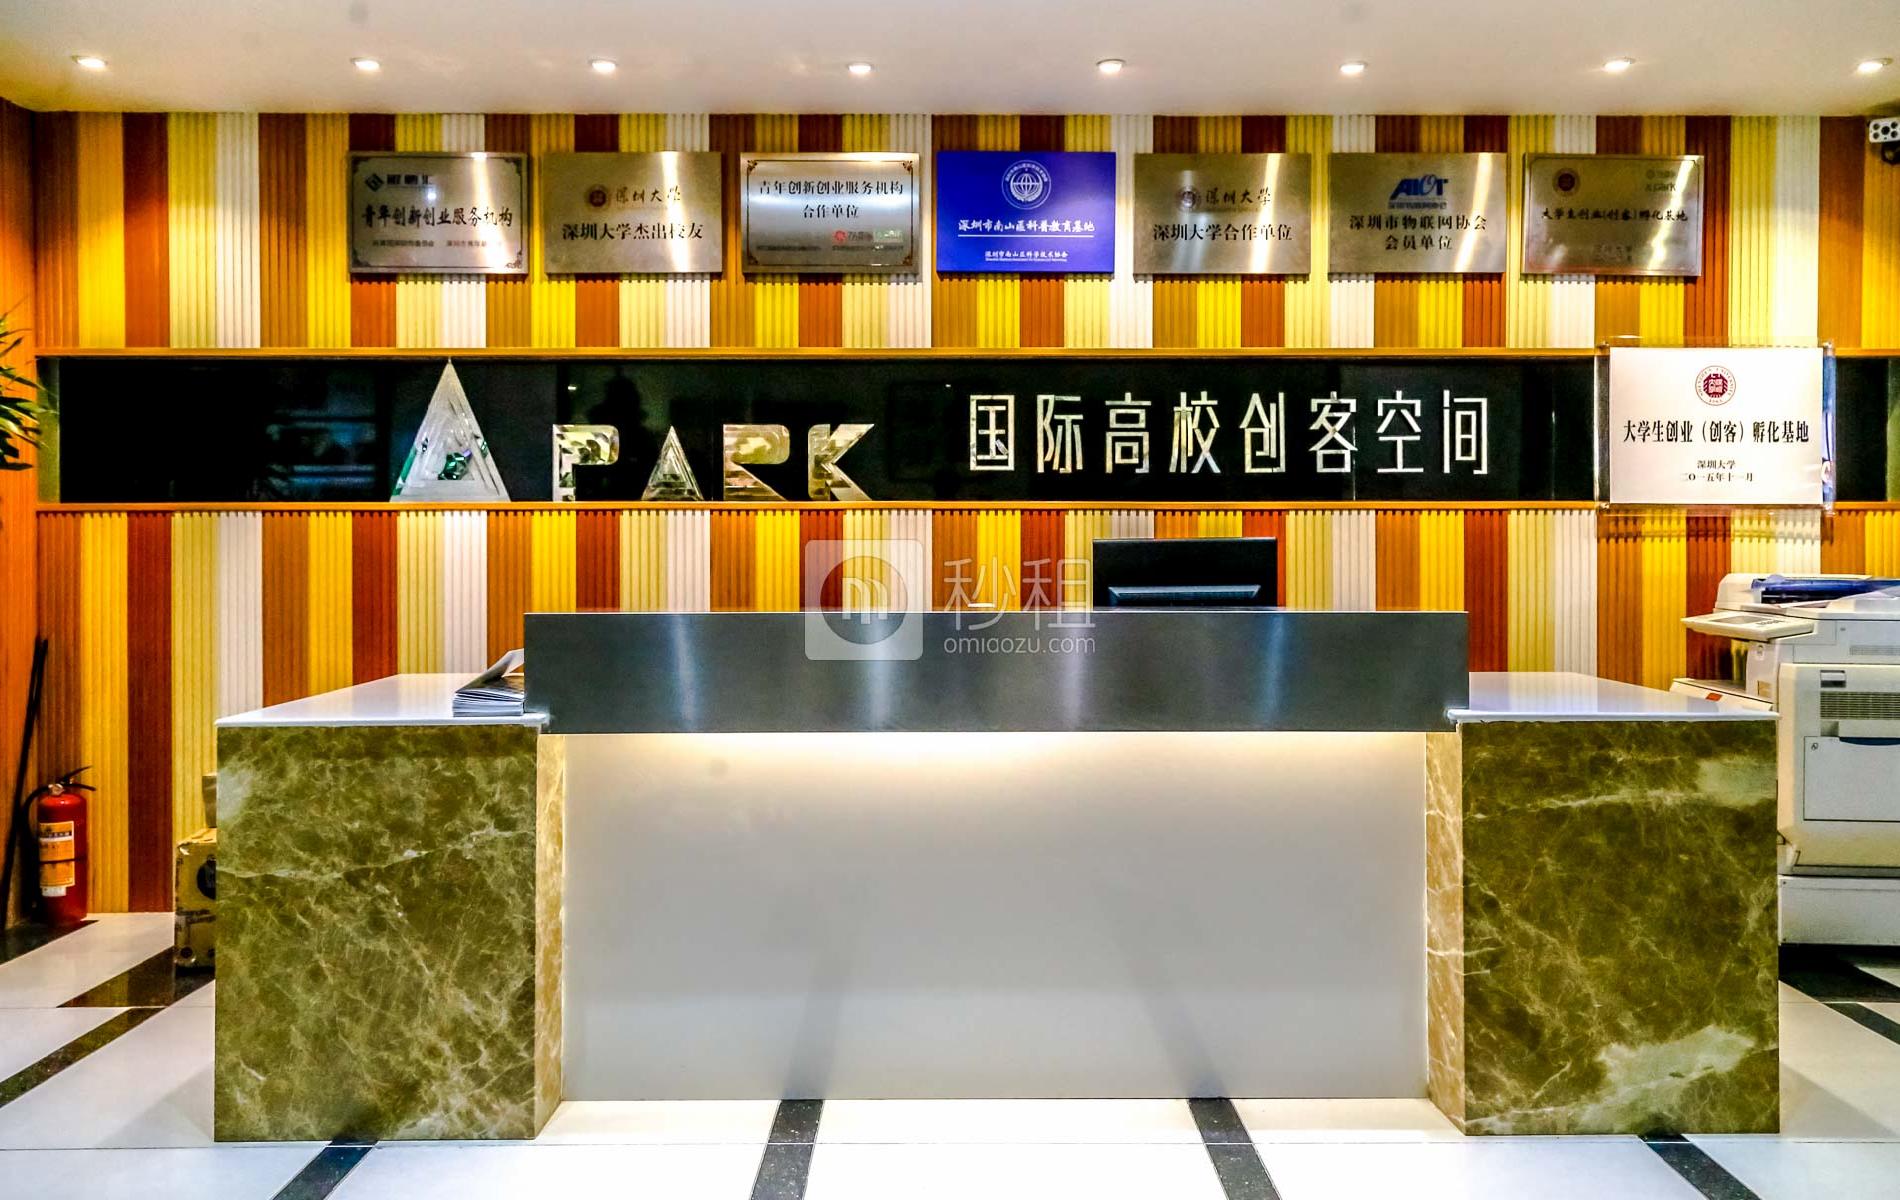   A PARK-旺棠大厦